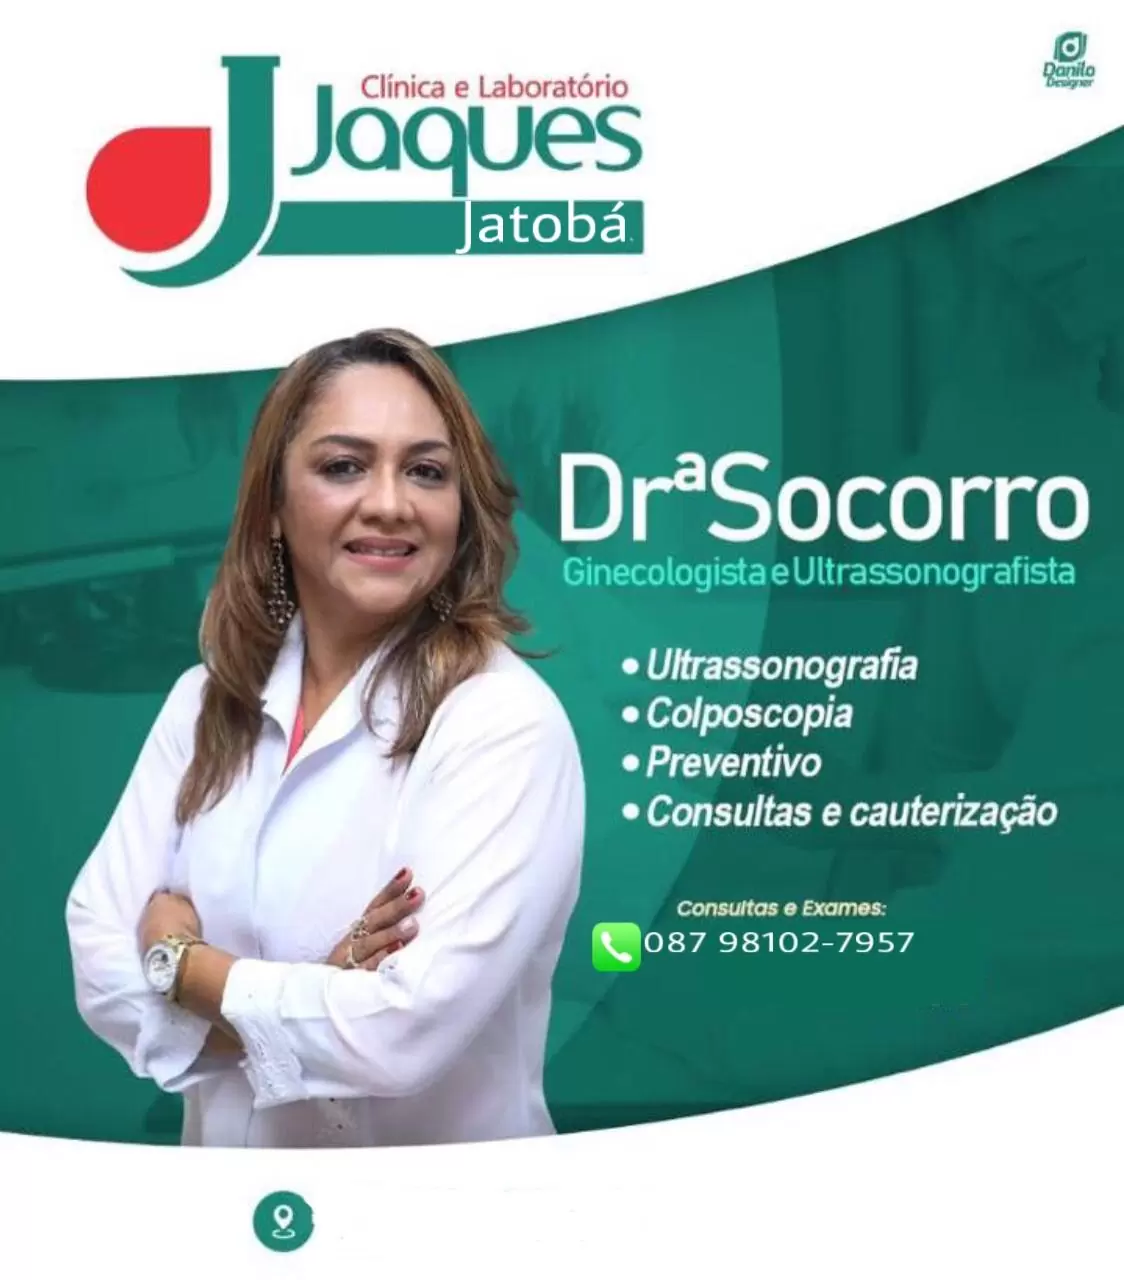 Jatobá: Drª Socorro realizará consultas em Ginecologia e Ultrassonografia quinta-feira (05/11) na Clínica e Laboratório Jaques